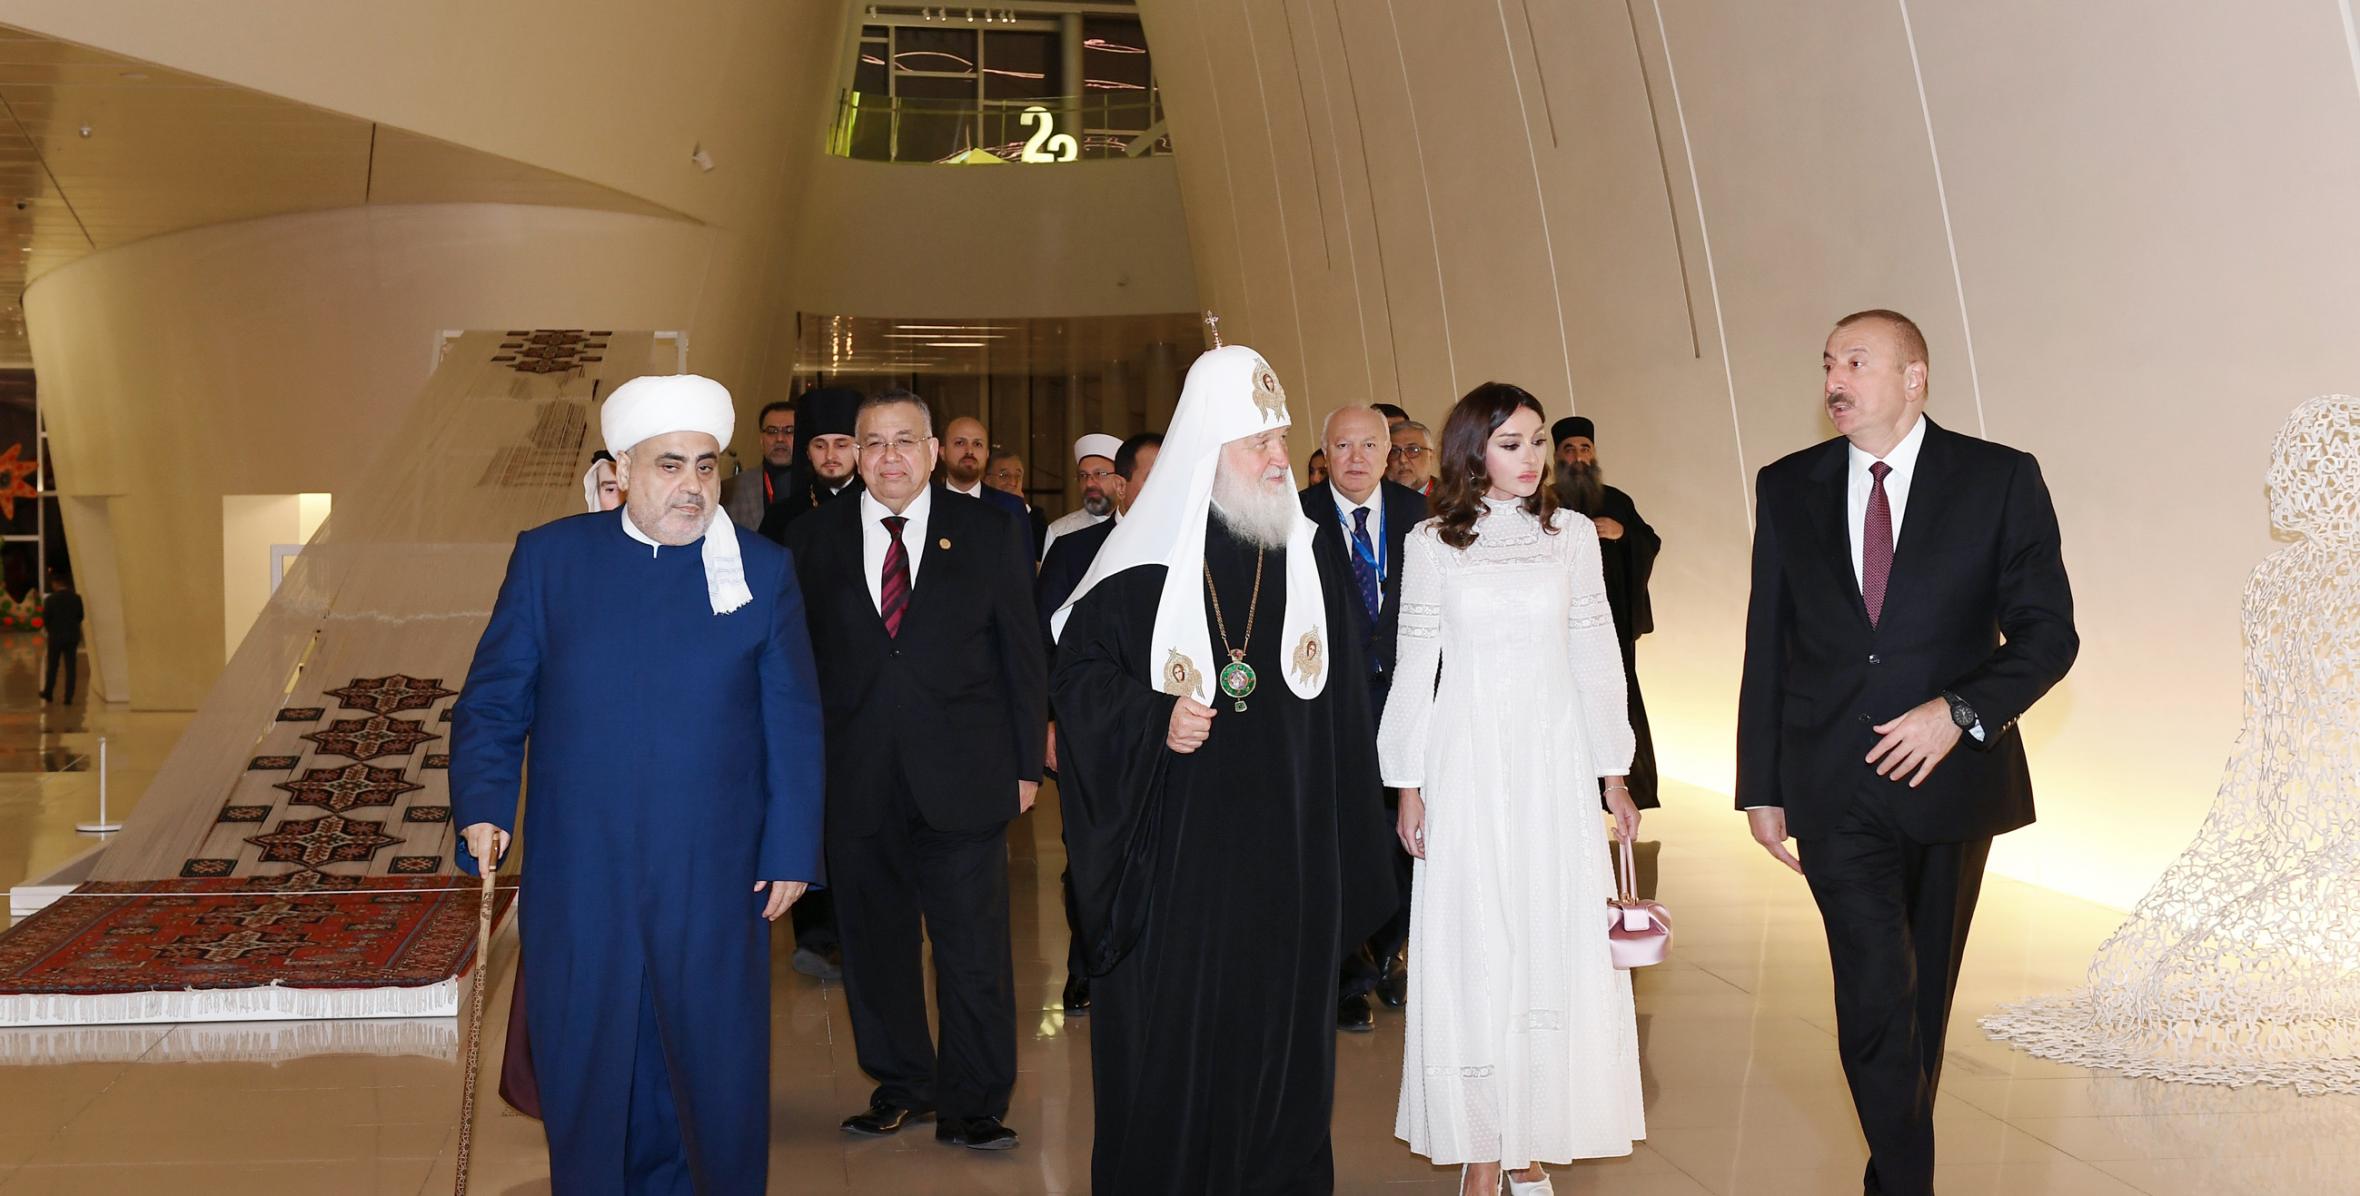 От имени Ильхама Алиева был устроен прием в честь участников II Бакинского саммита религиозных лидеров мира